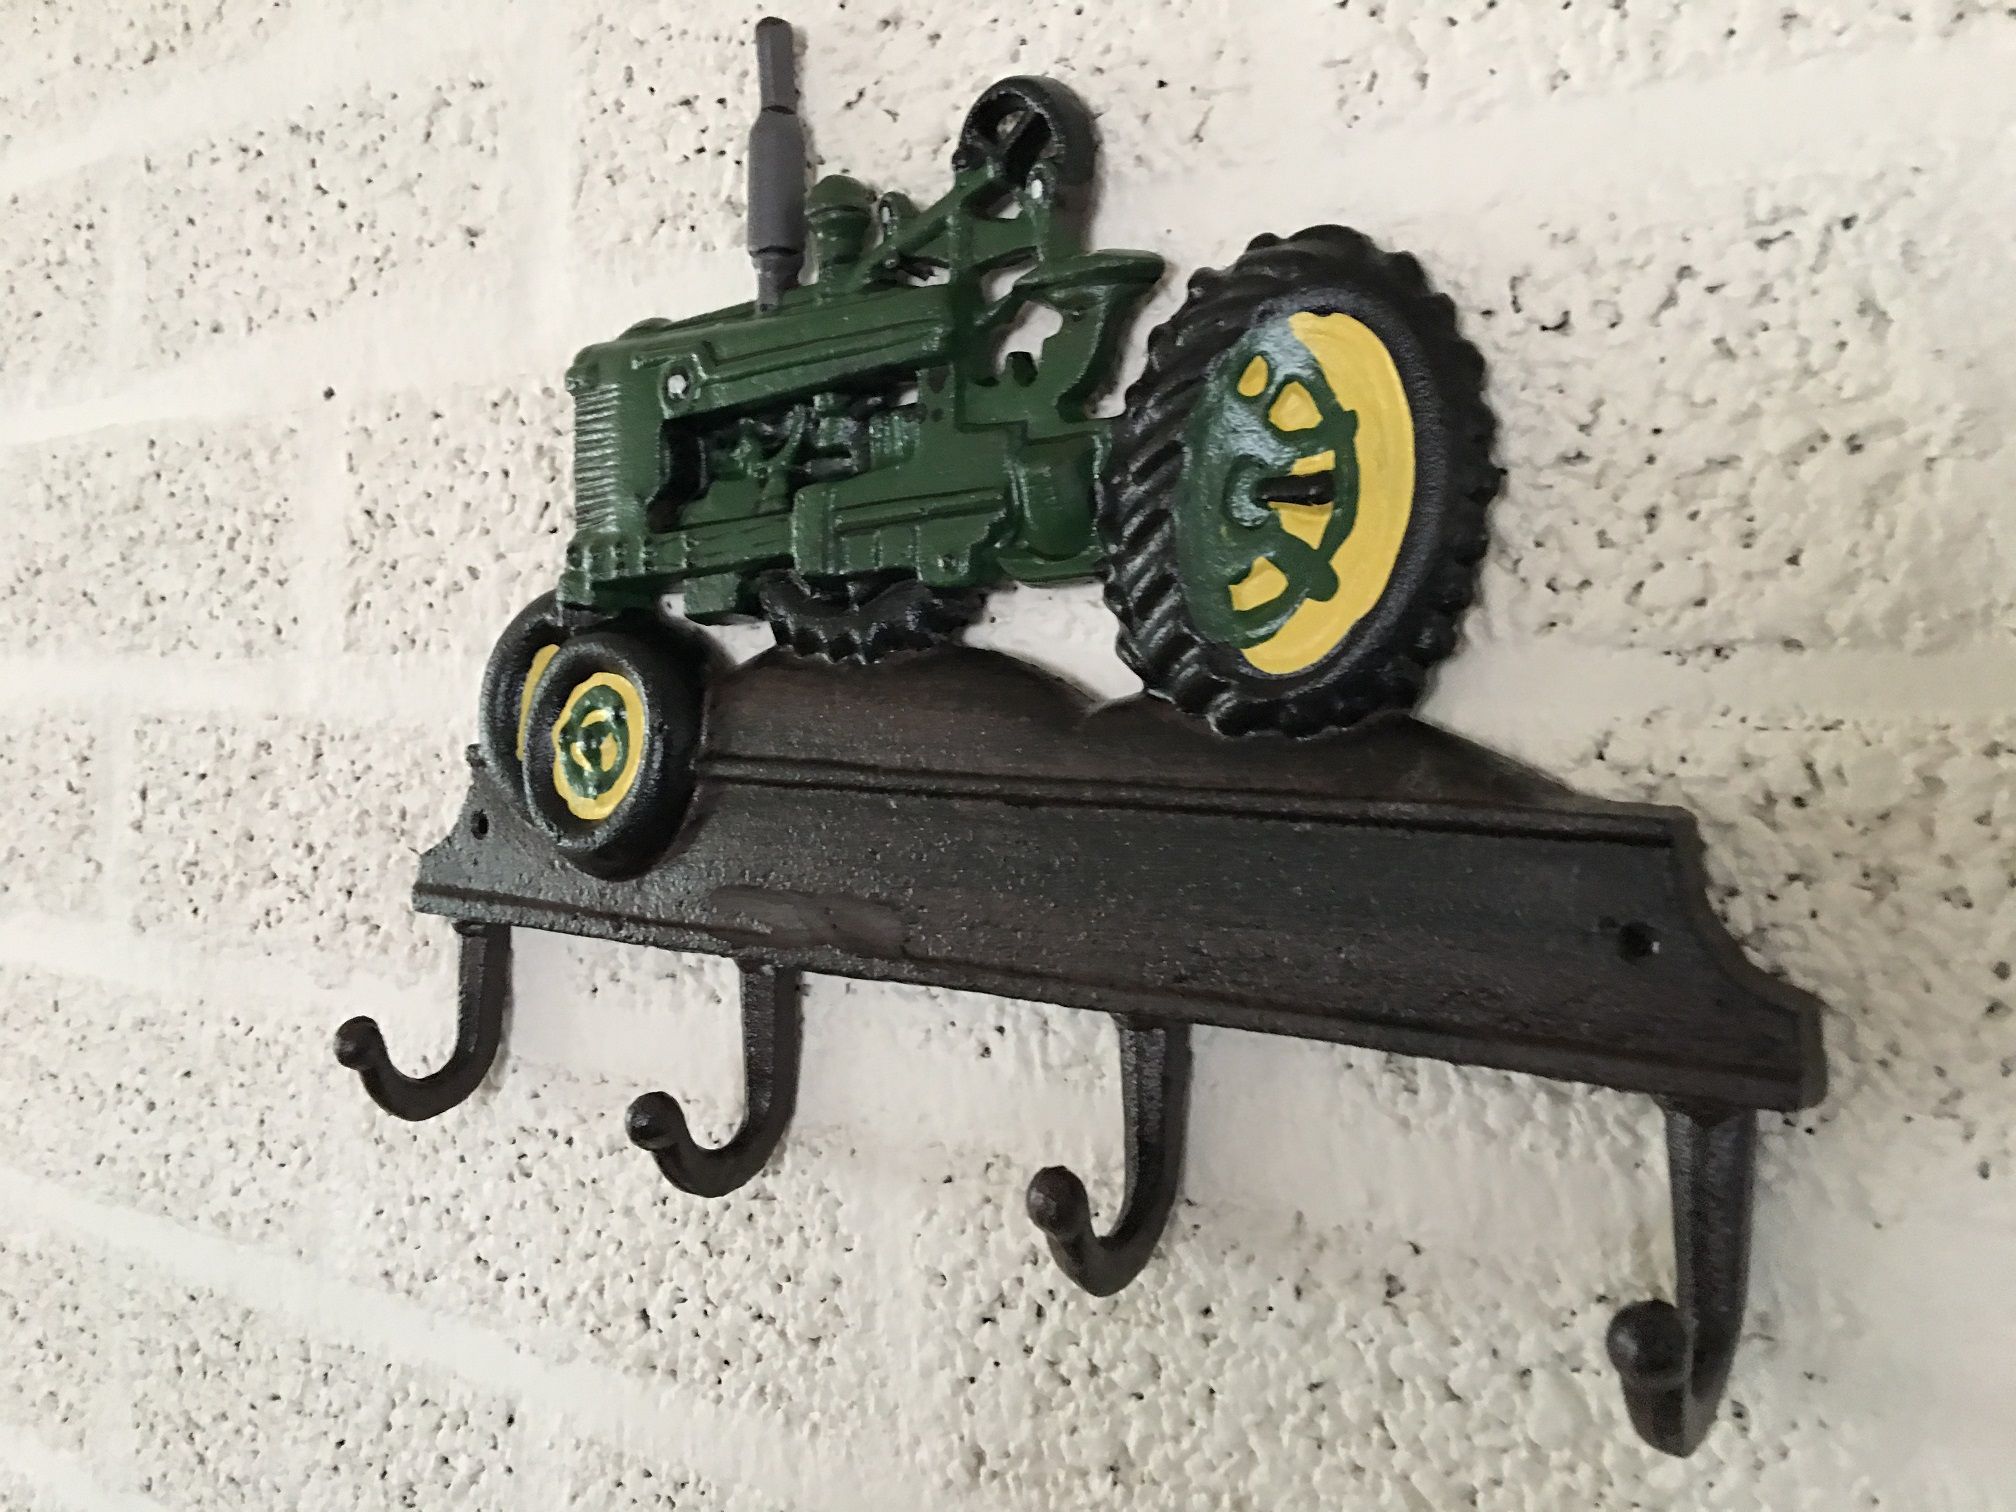 Garderobenständer im Bauerndesign mit Traktor, John Deere